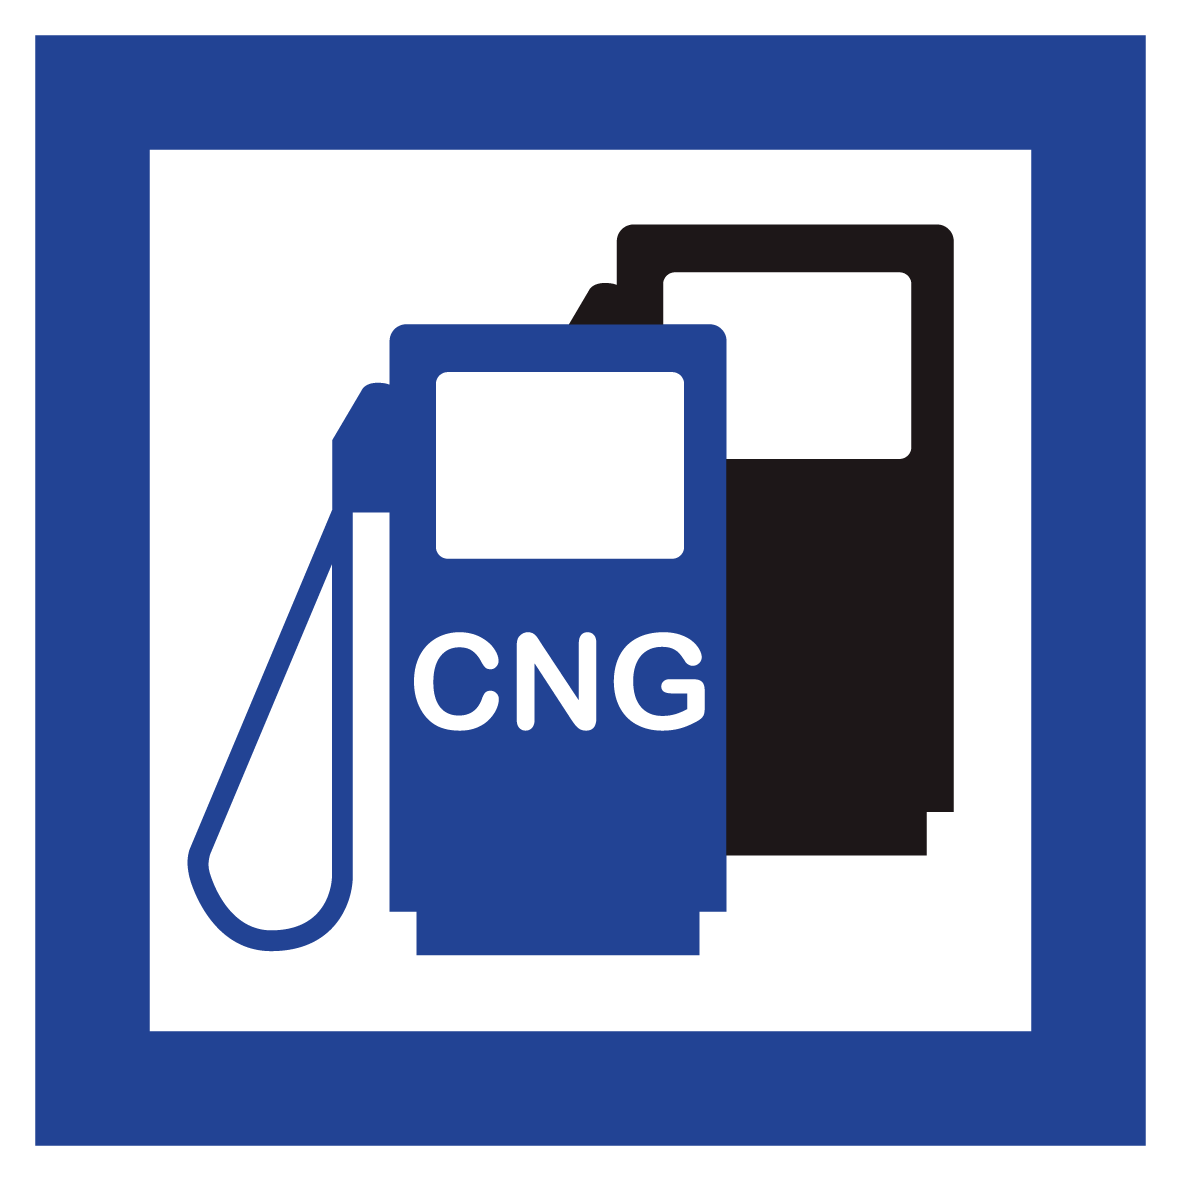 Schild für erneuerbare Energien - CNG Erdgas Tankstelle - Folie Selbstklebend - 5 x 5 cm